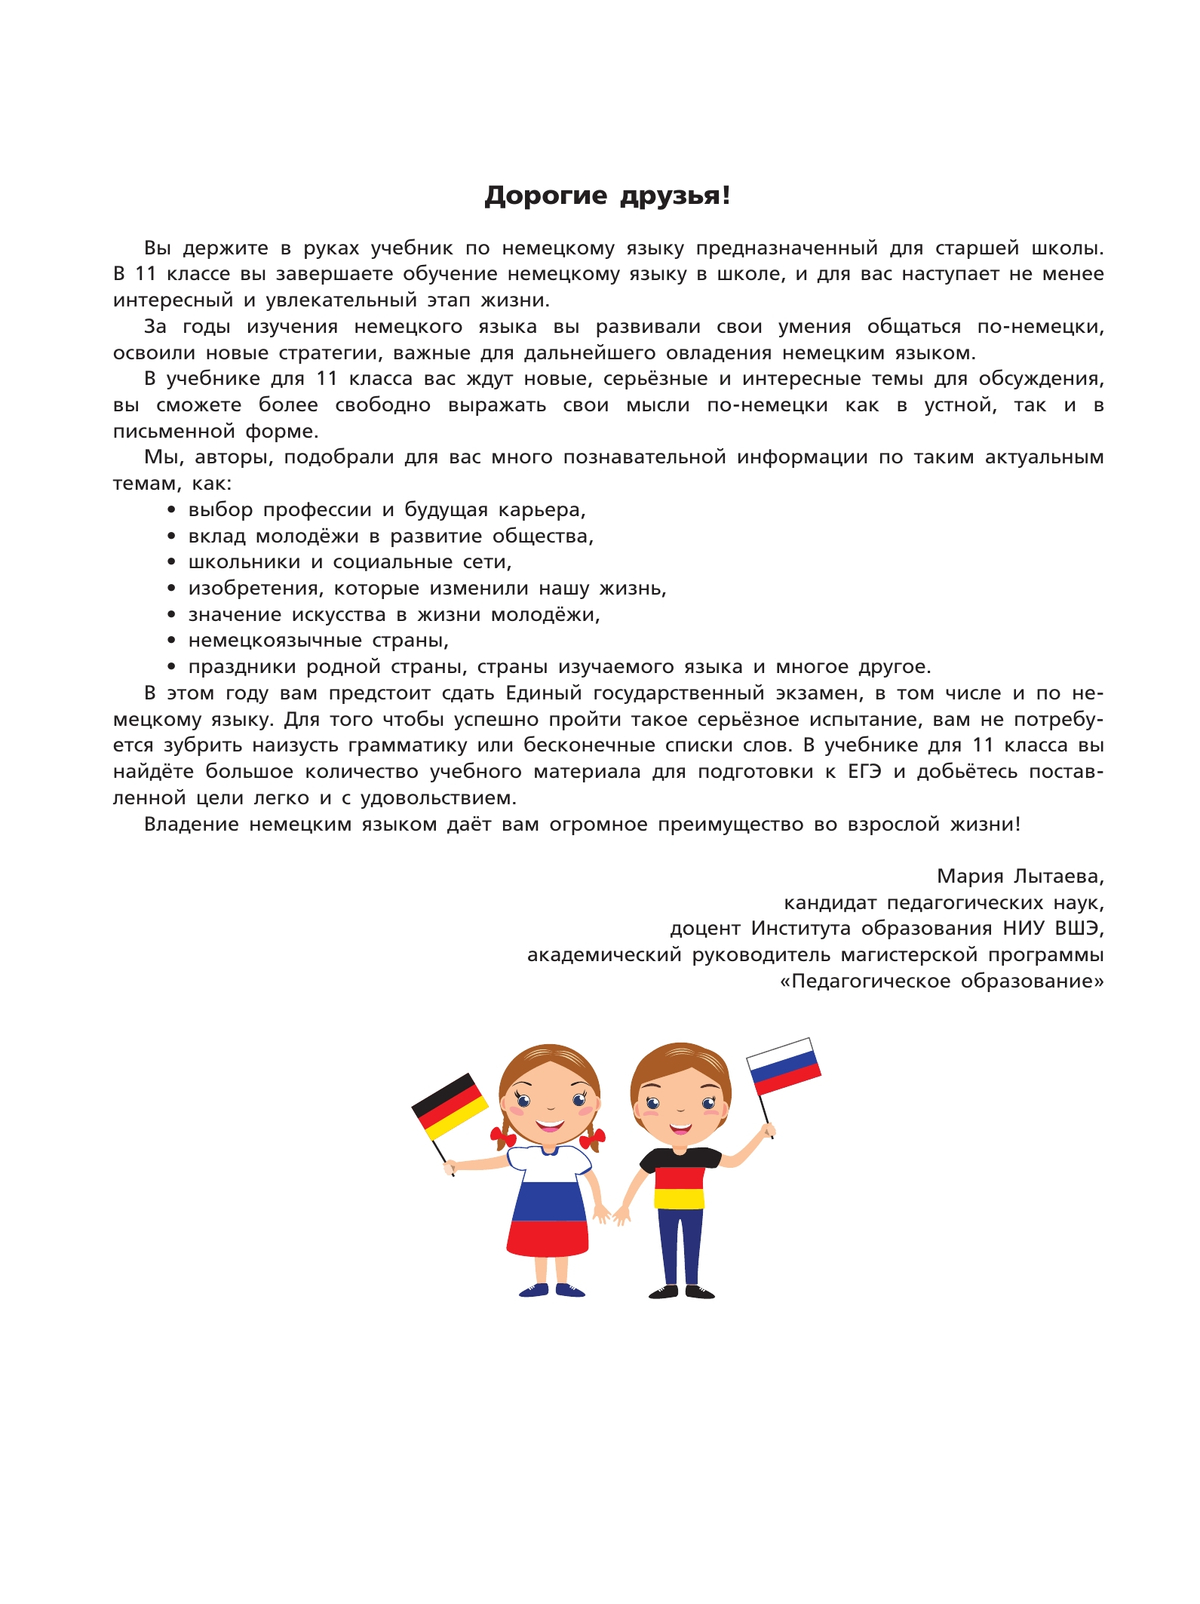 Немецкий язык. 11 класс. Учебник для общеобразовательных организаций. Базовый уровень 6